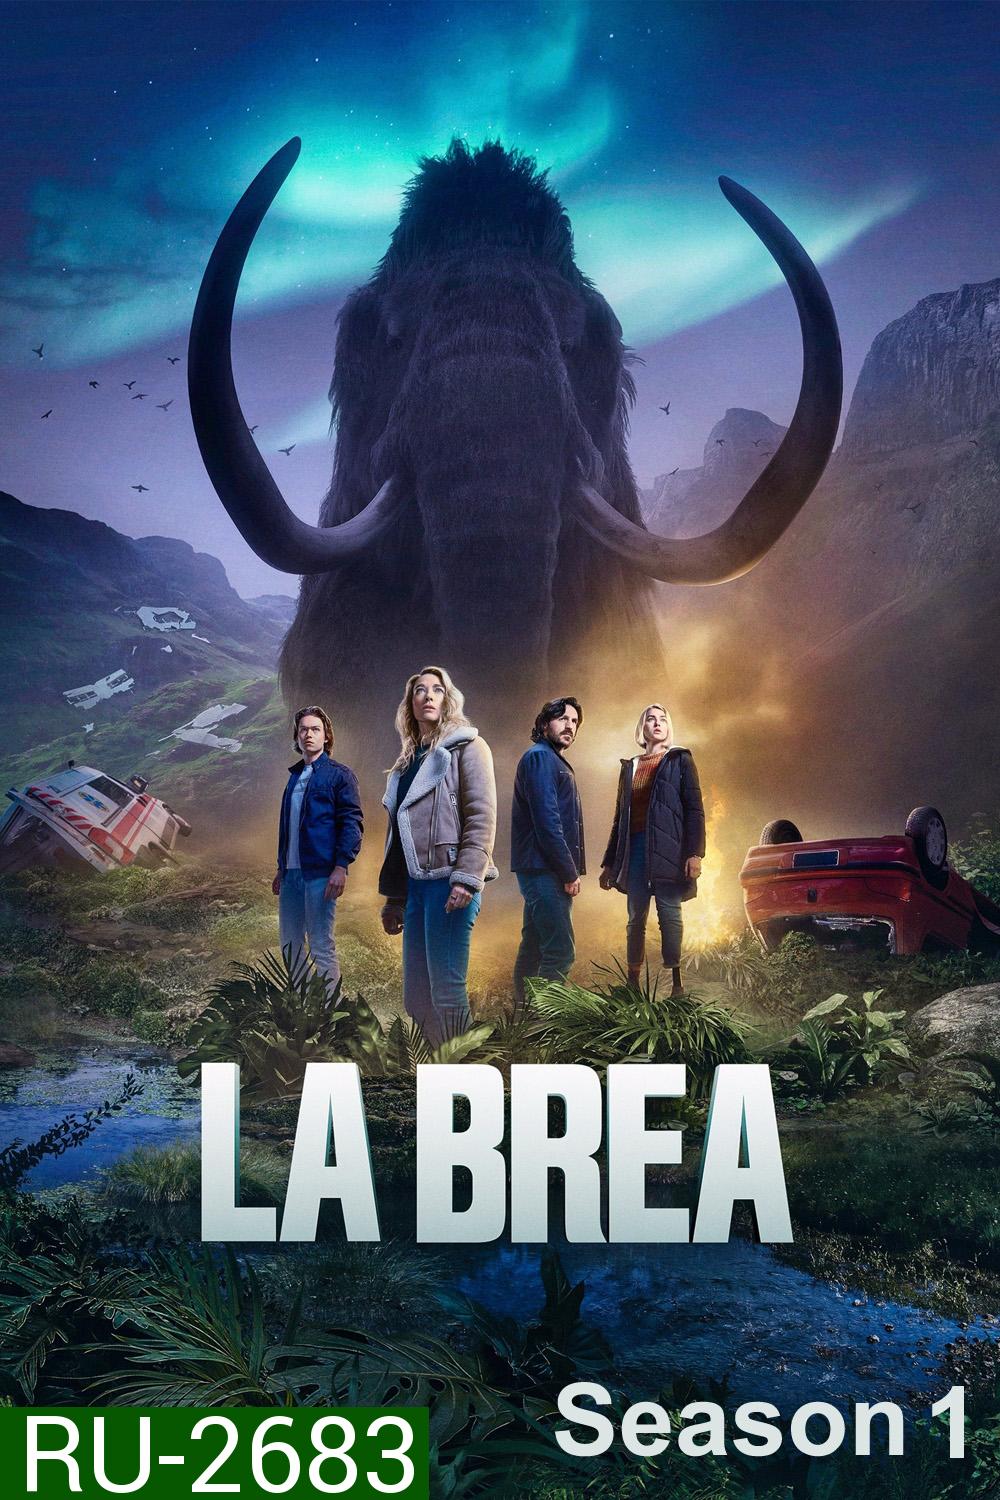 La Brea Season 1 (2021) ลาเบรีย ผจญภัยโลกดึกดำบรรพ์ (10 ตอน)